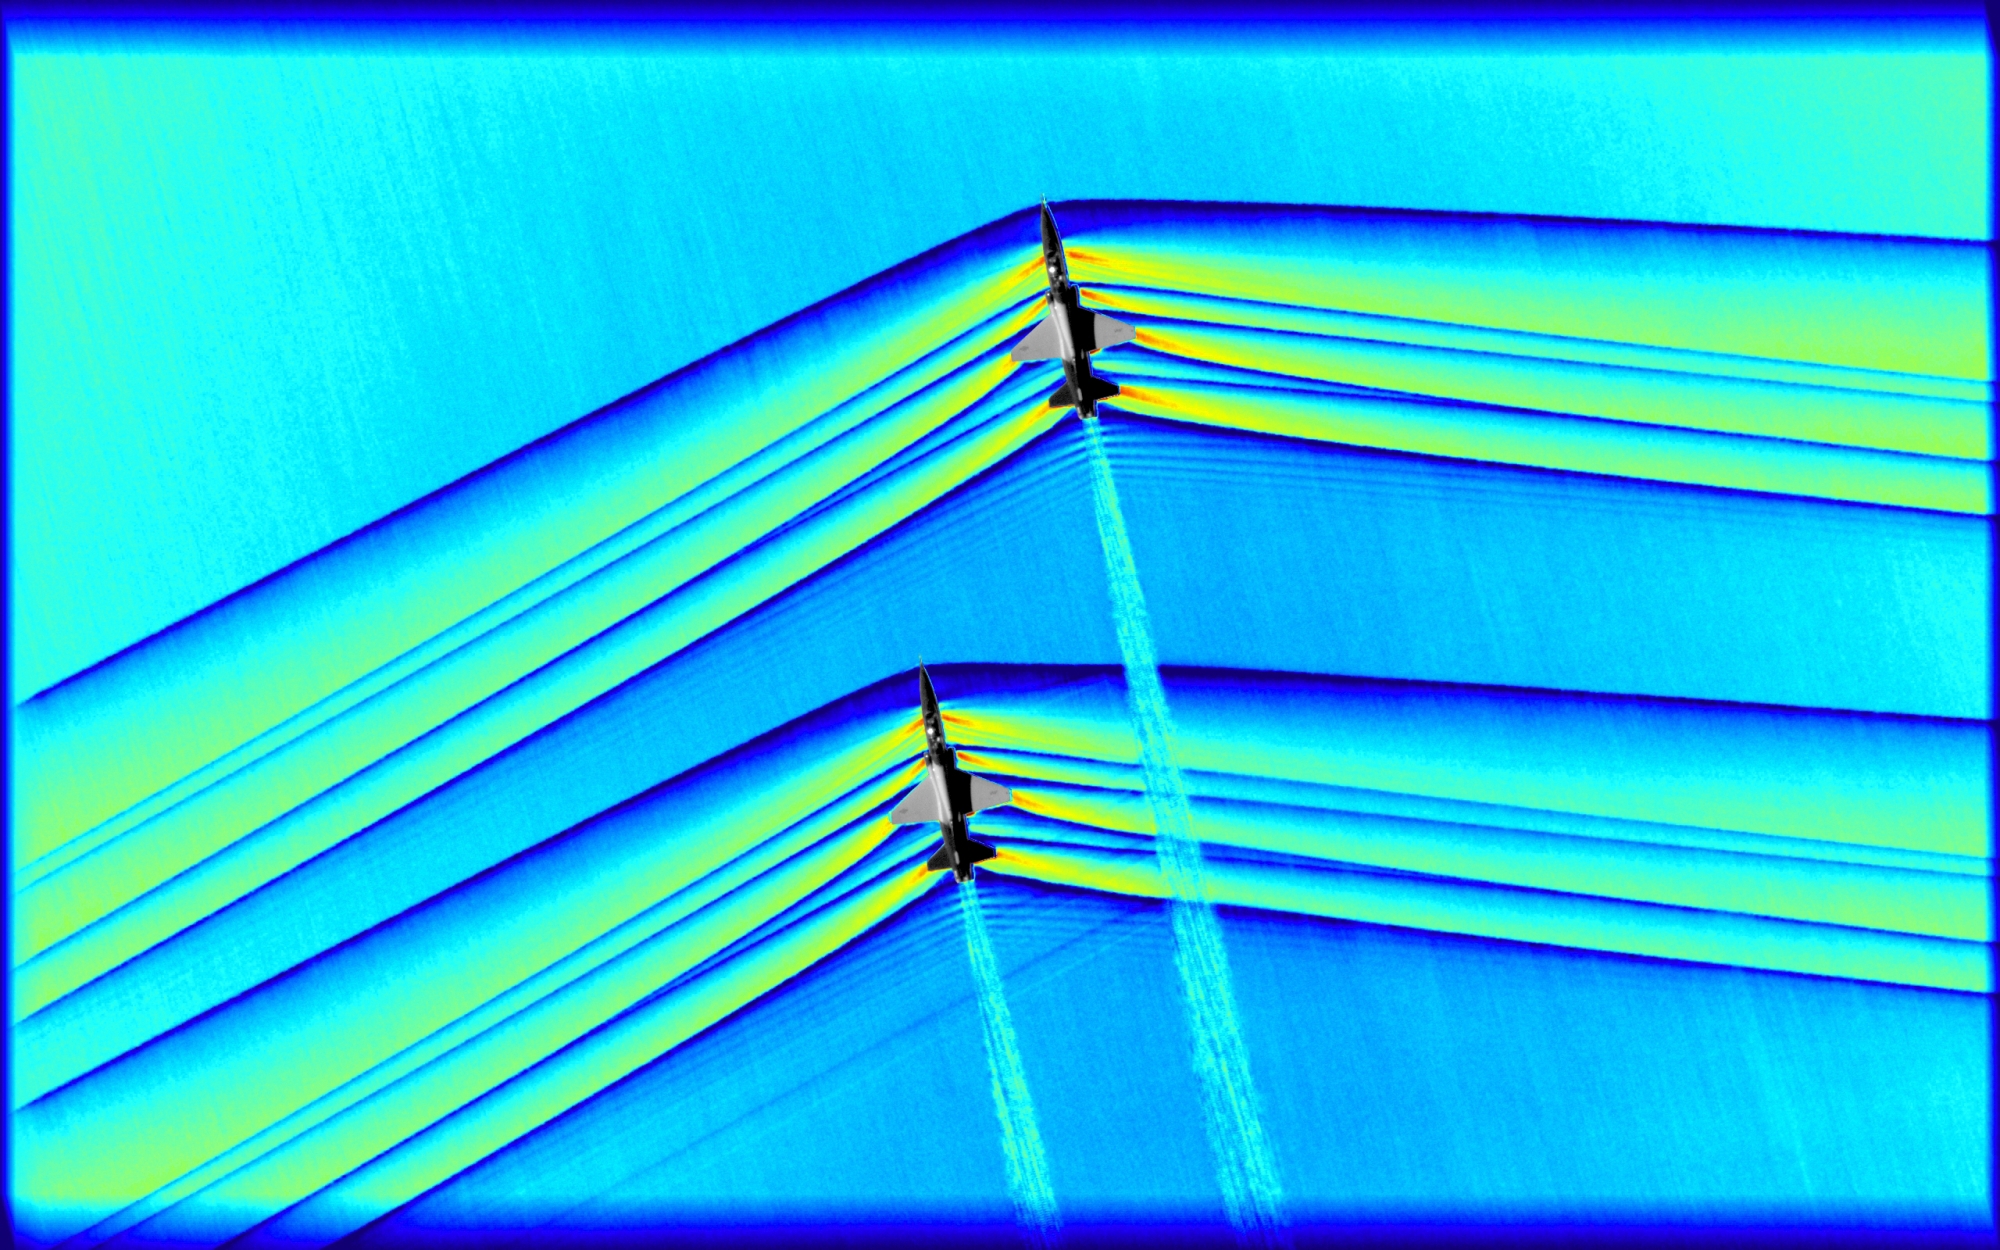 La NASA a diffusé mardi des images inédites qui montrent deux avions supersoniques créer des ondes de choc sonores en traversant l'atmosphères.